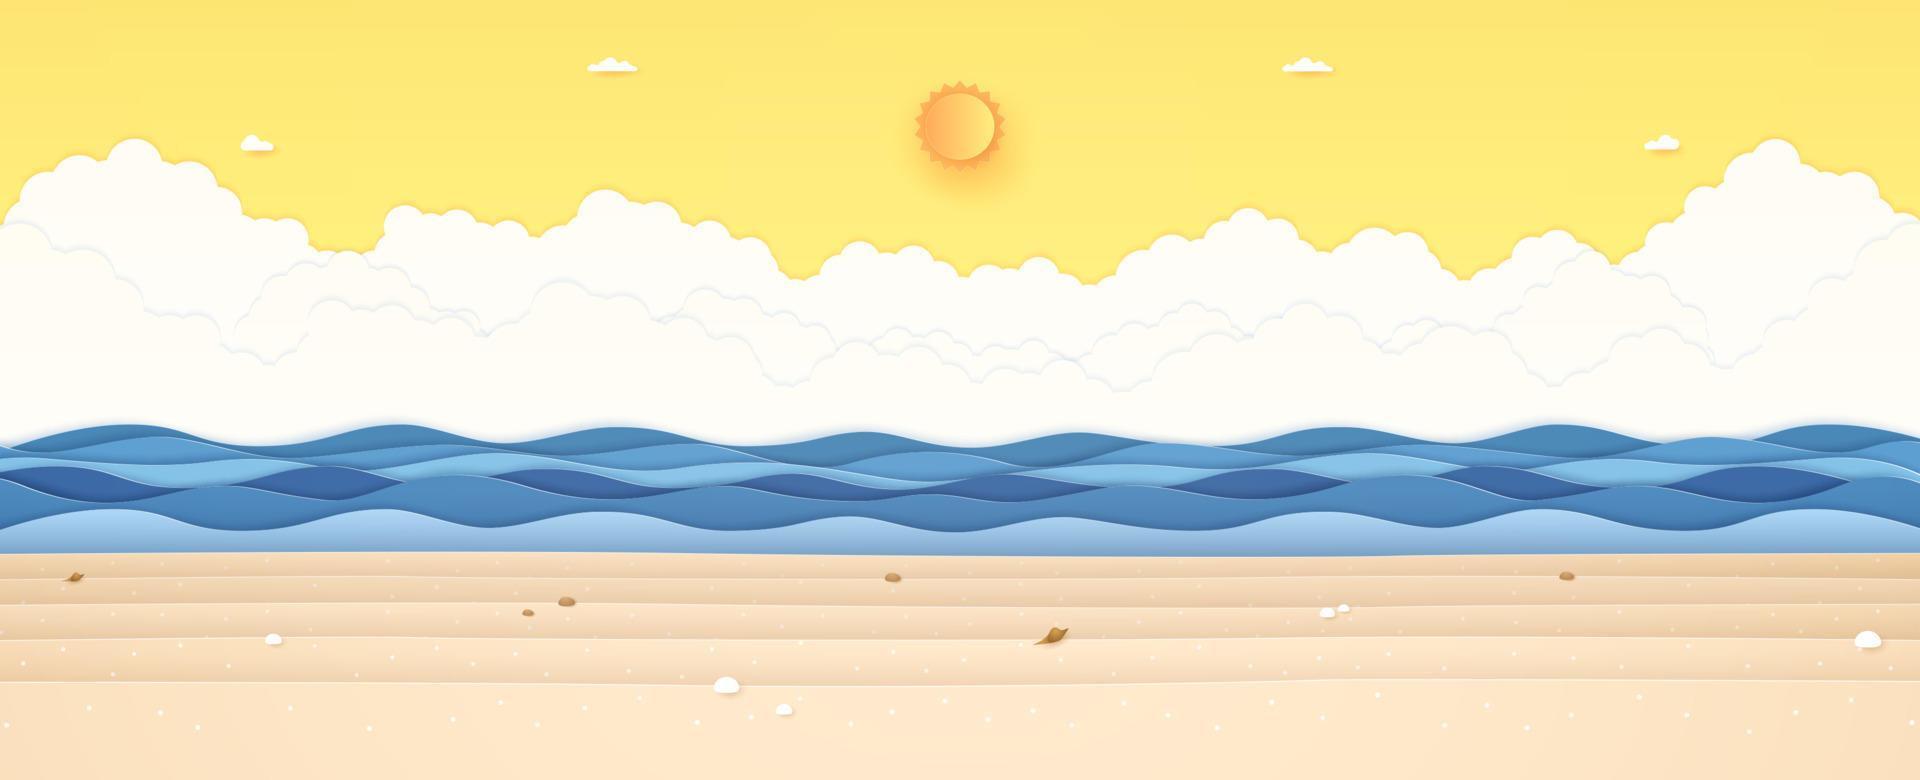 sommartid, marinmålning, landskap, blått vågigt hav med sten och skaldjur på stranden, strålande sol och orange solig himmel, papper konststil vektor